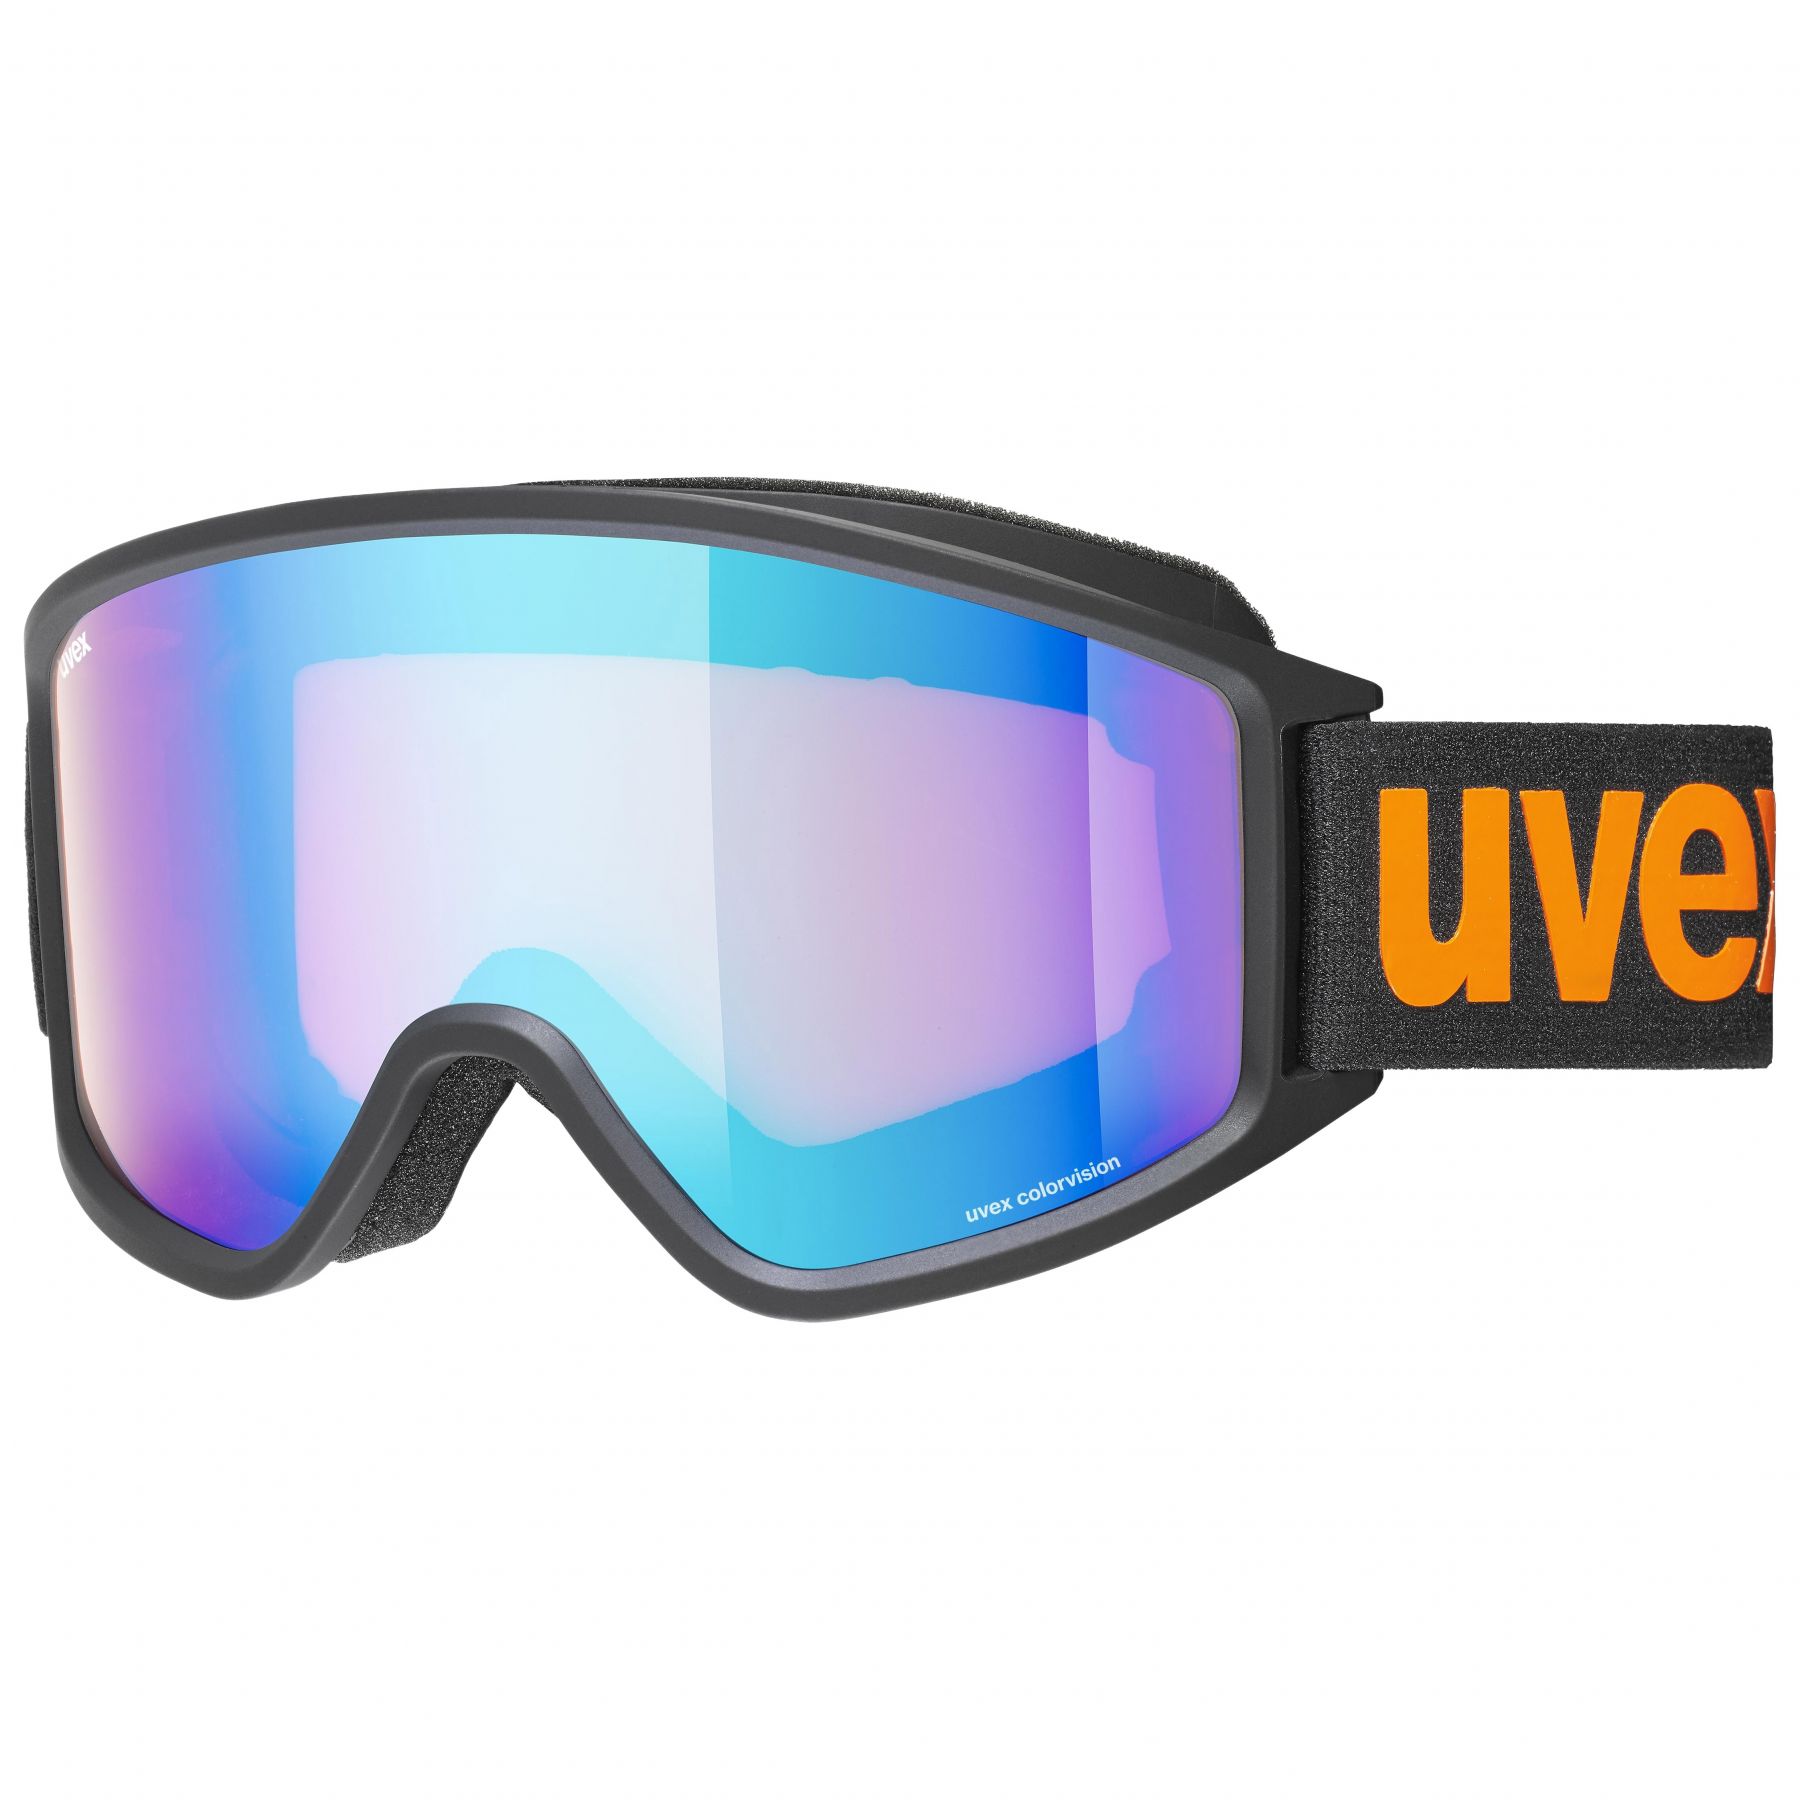 Brug Uvex g.gl. 3000 CV, skibriller, sort/orange til en forbedret oplevelse